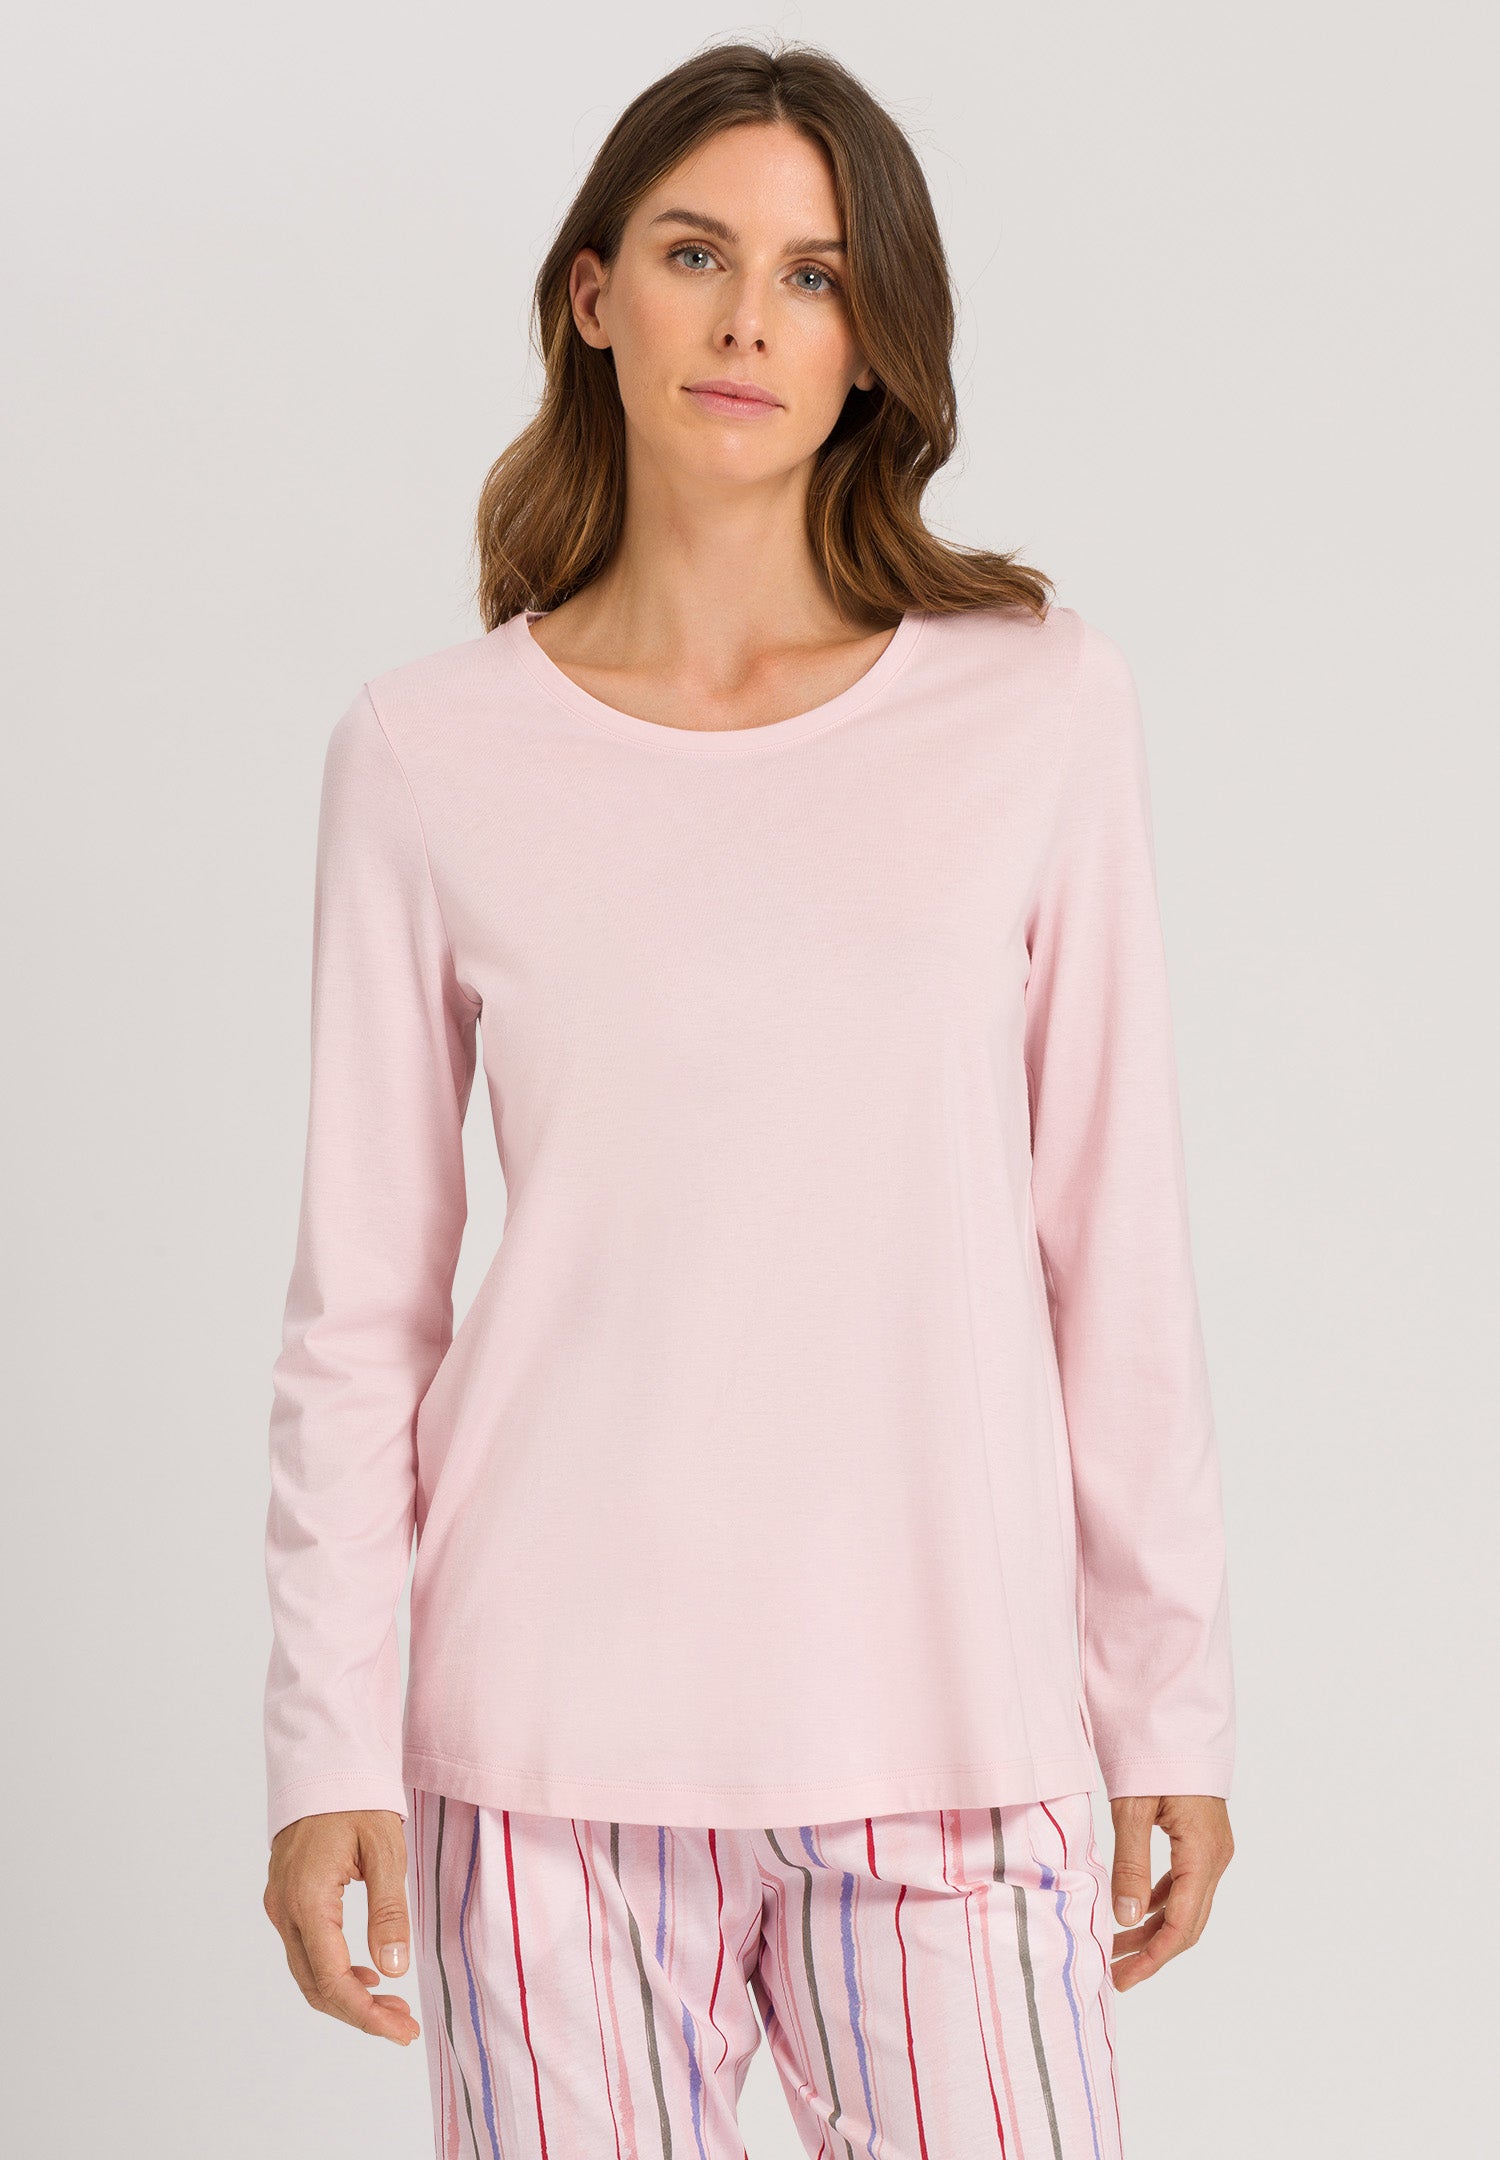 HANRO Sleep & Lounge Long Sleeve Shirt in Pink Whip